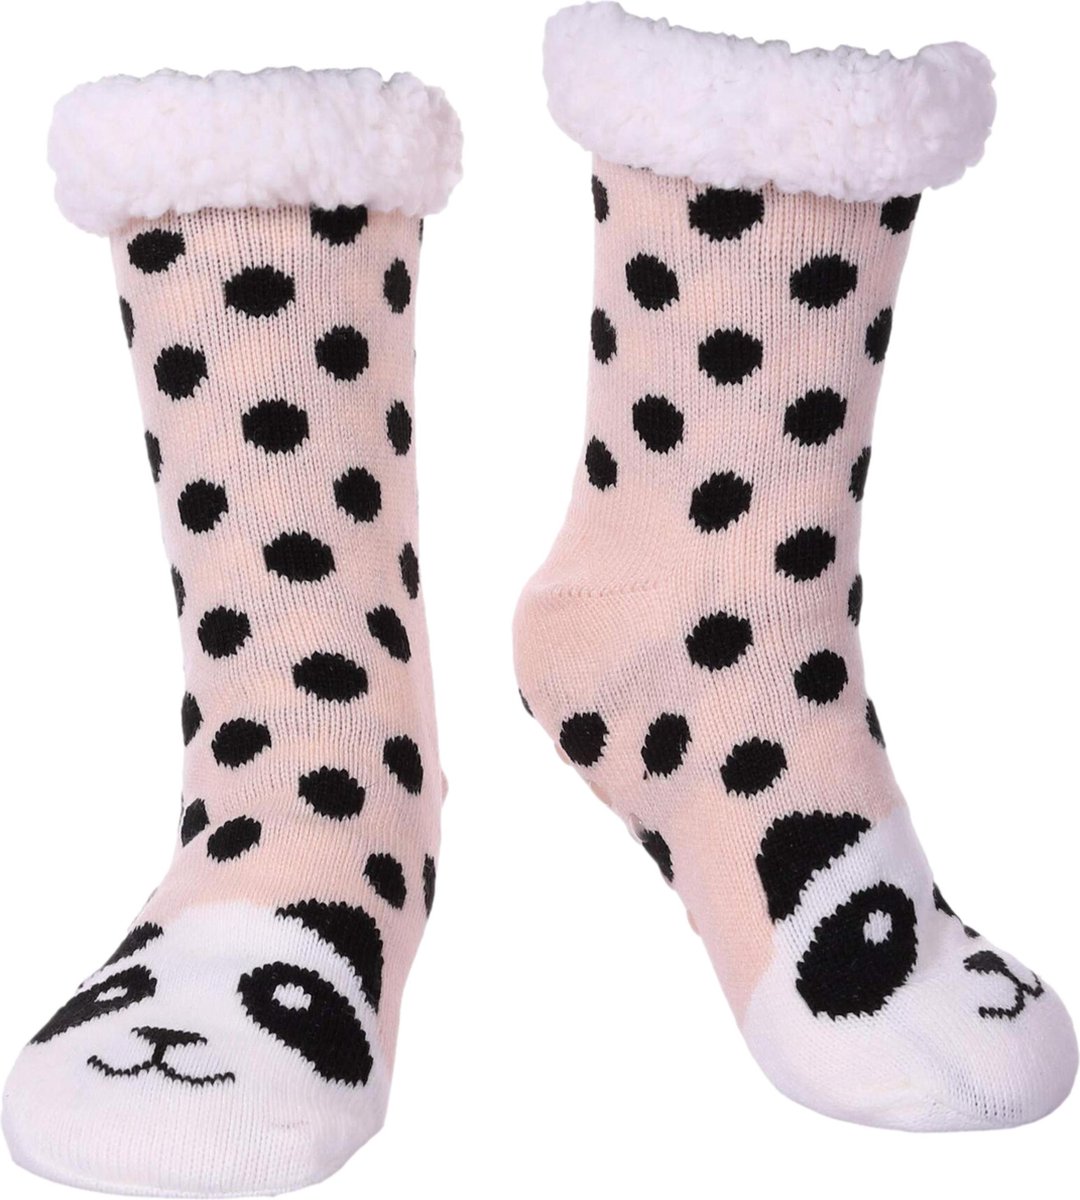 JAXY Huissokken - Huissokken Dames en Heren - Verwarmde sokken - Anti Slip Sokken - Fleece Sokken - Dikke Sokken - Fluffy Sokken - Slofsokken - Warme Sokken - Bedsokken - Gevoerde Sokken - Winter Sokken - Panda - JAXY